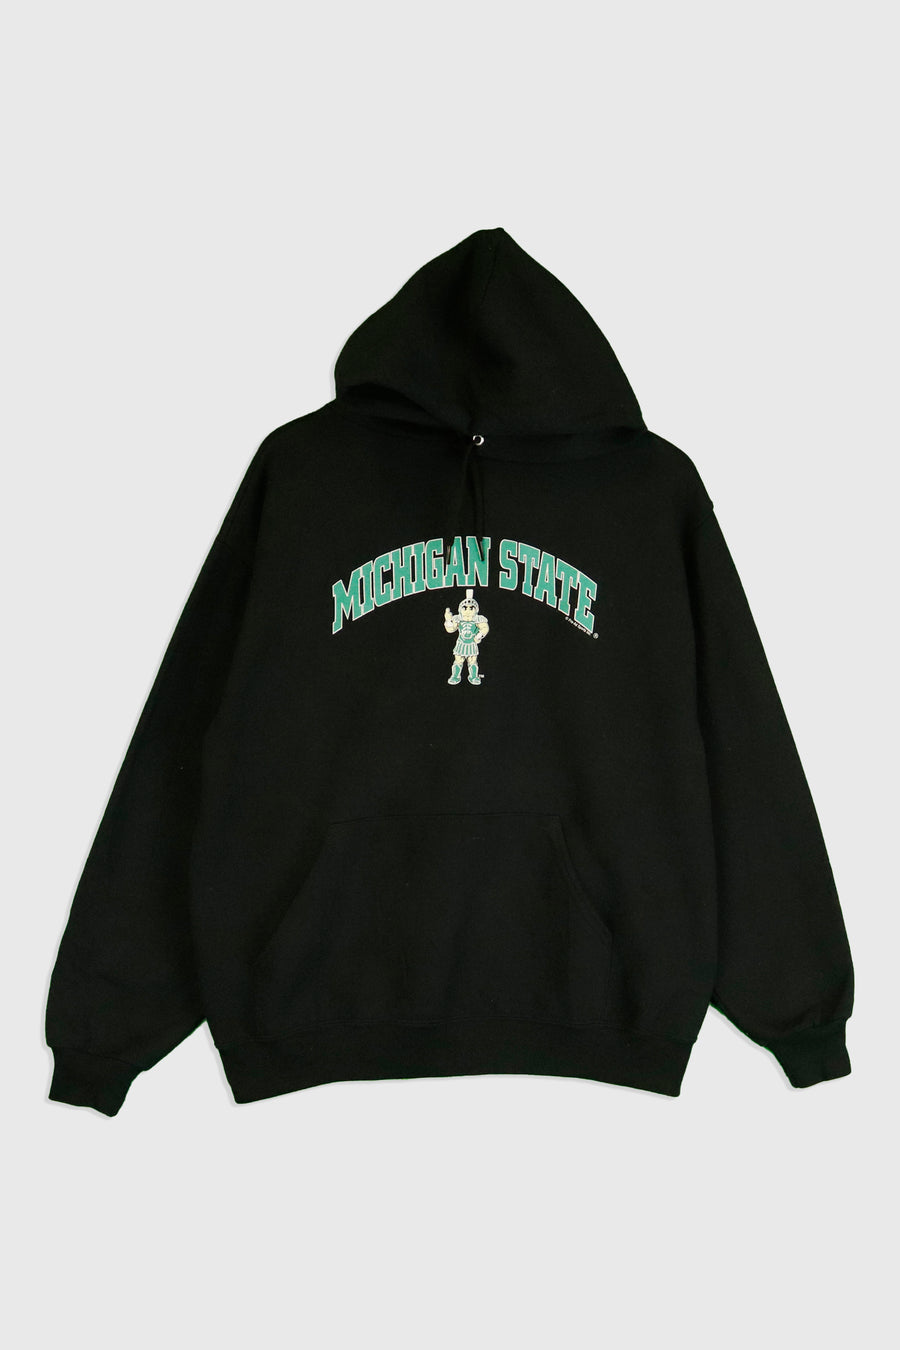 Vintage Michigan State Trojan Man Sweatshirt Sz L